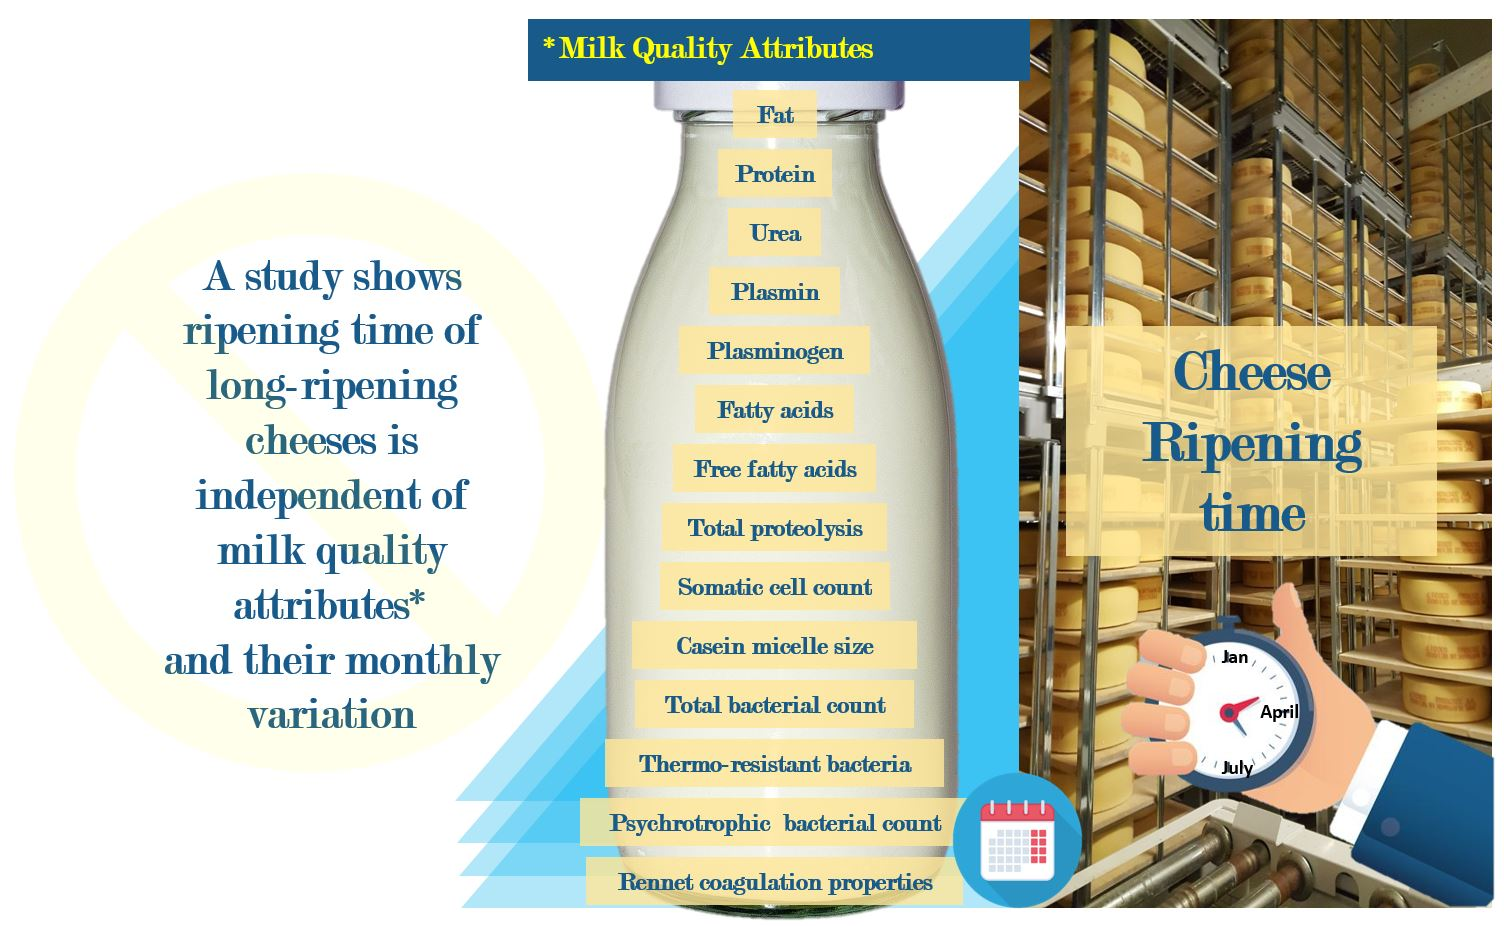 Composition of bulk milk (means ± s.d.)